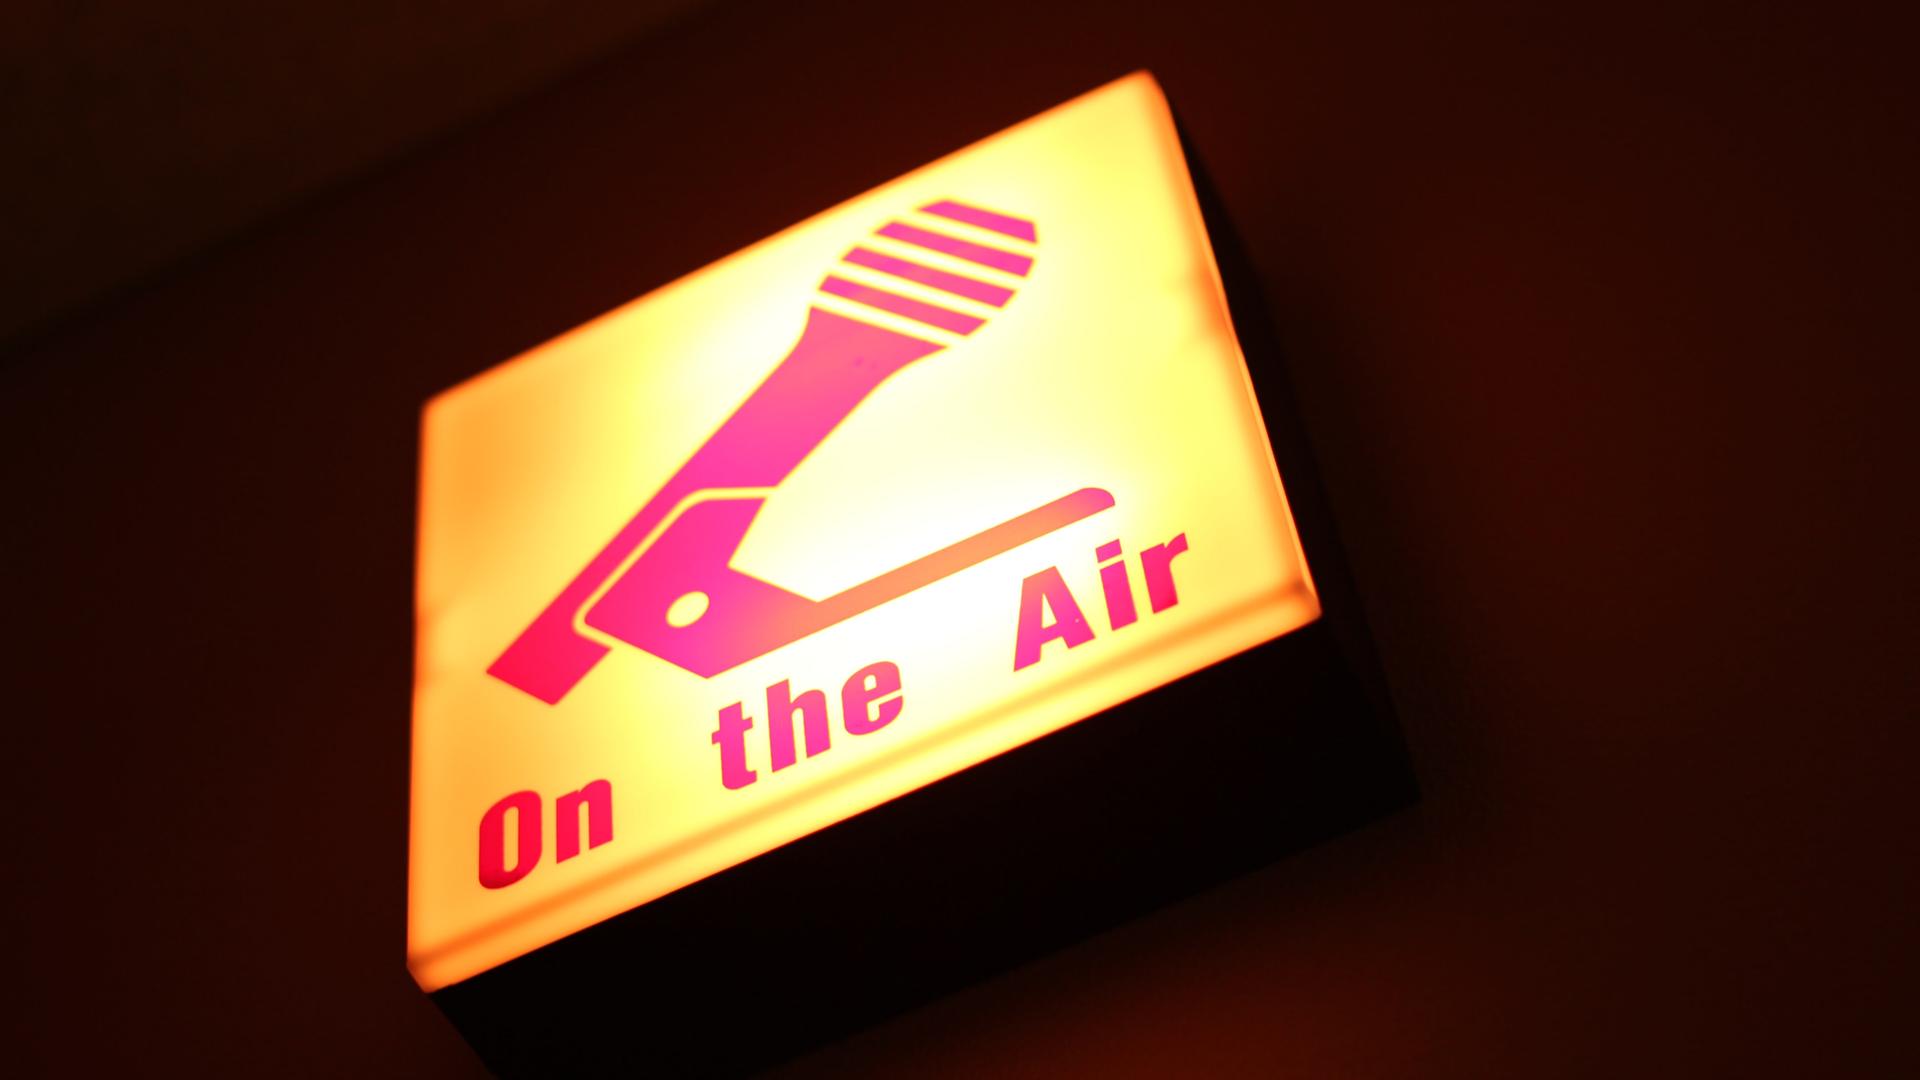 Gelblich-pink leuchtendes Schild mit der Aufschrift "on the Air" und einem Mikrofon